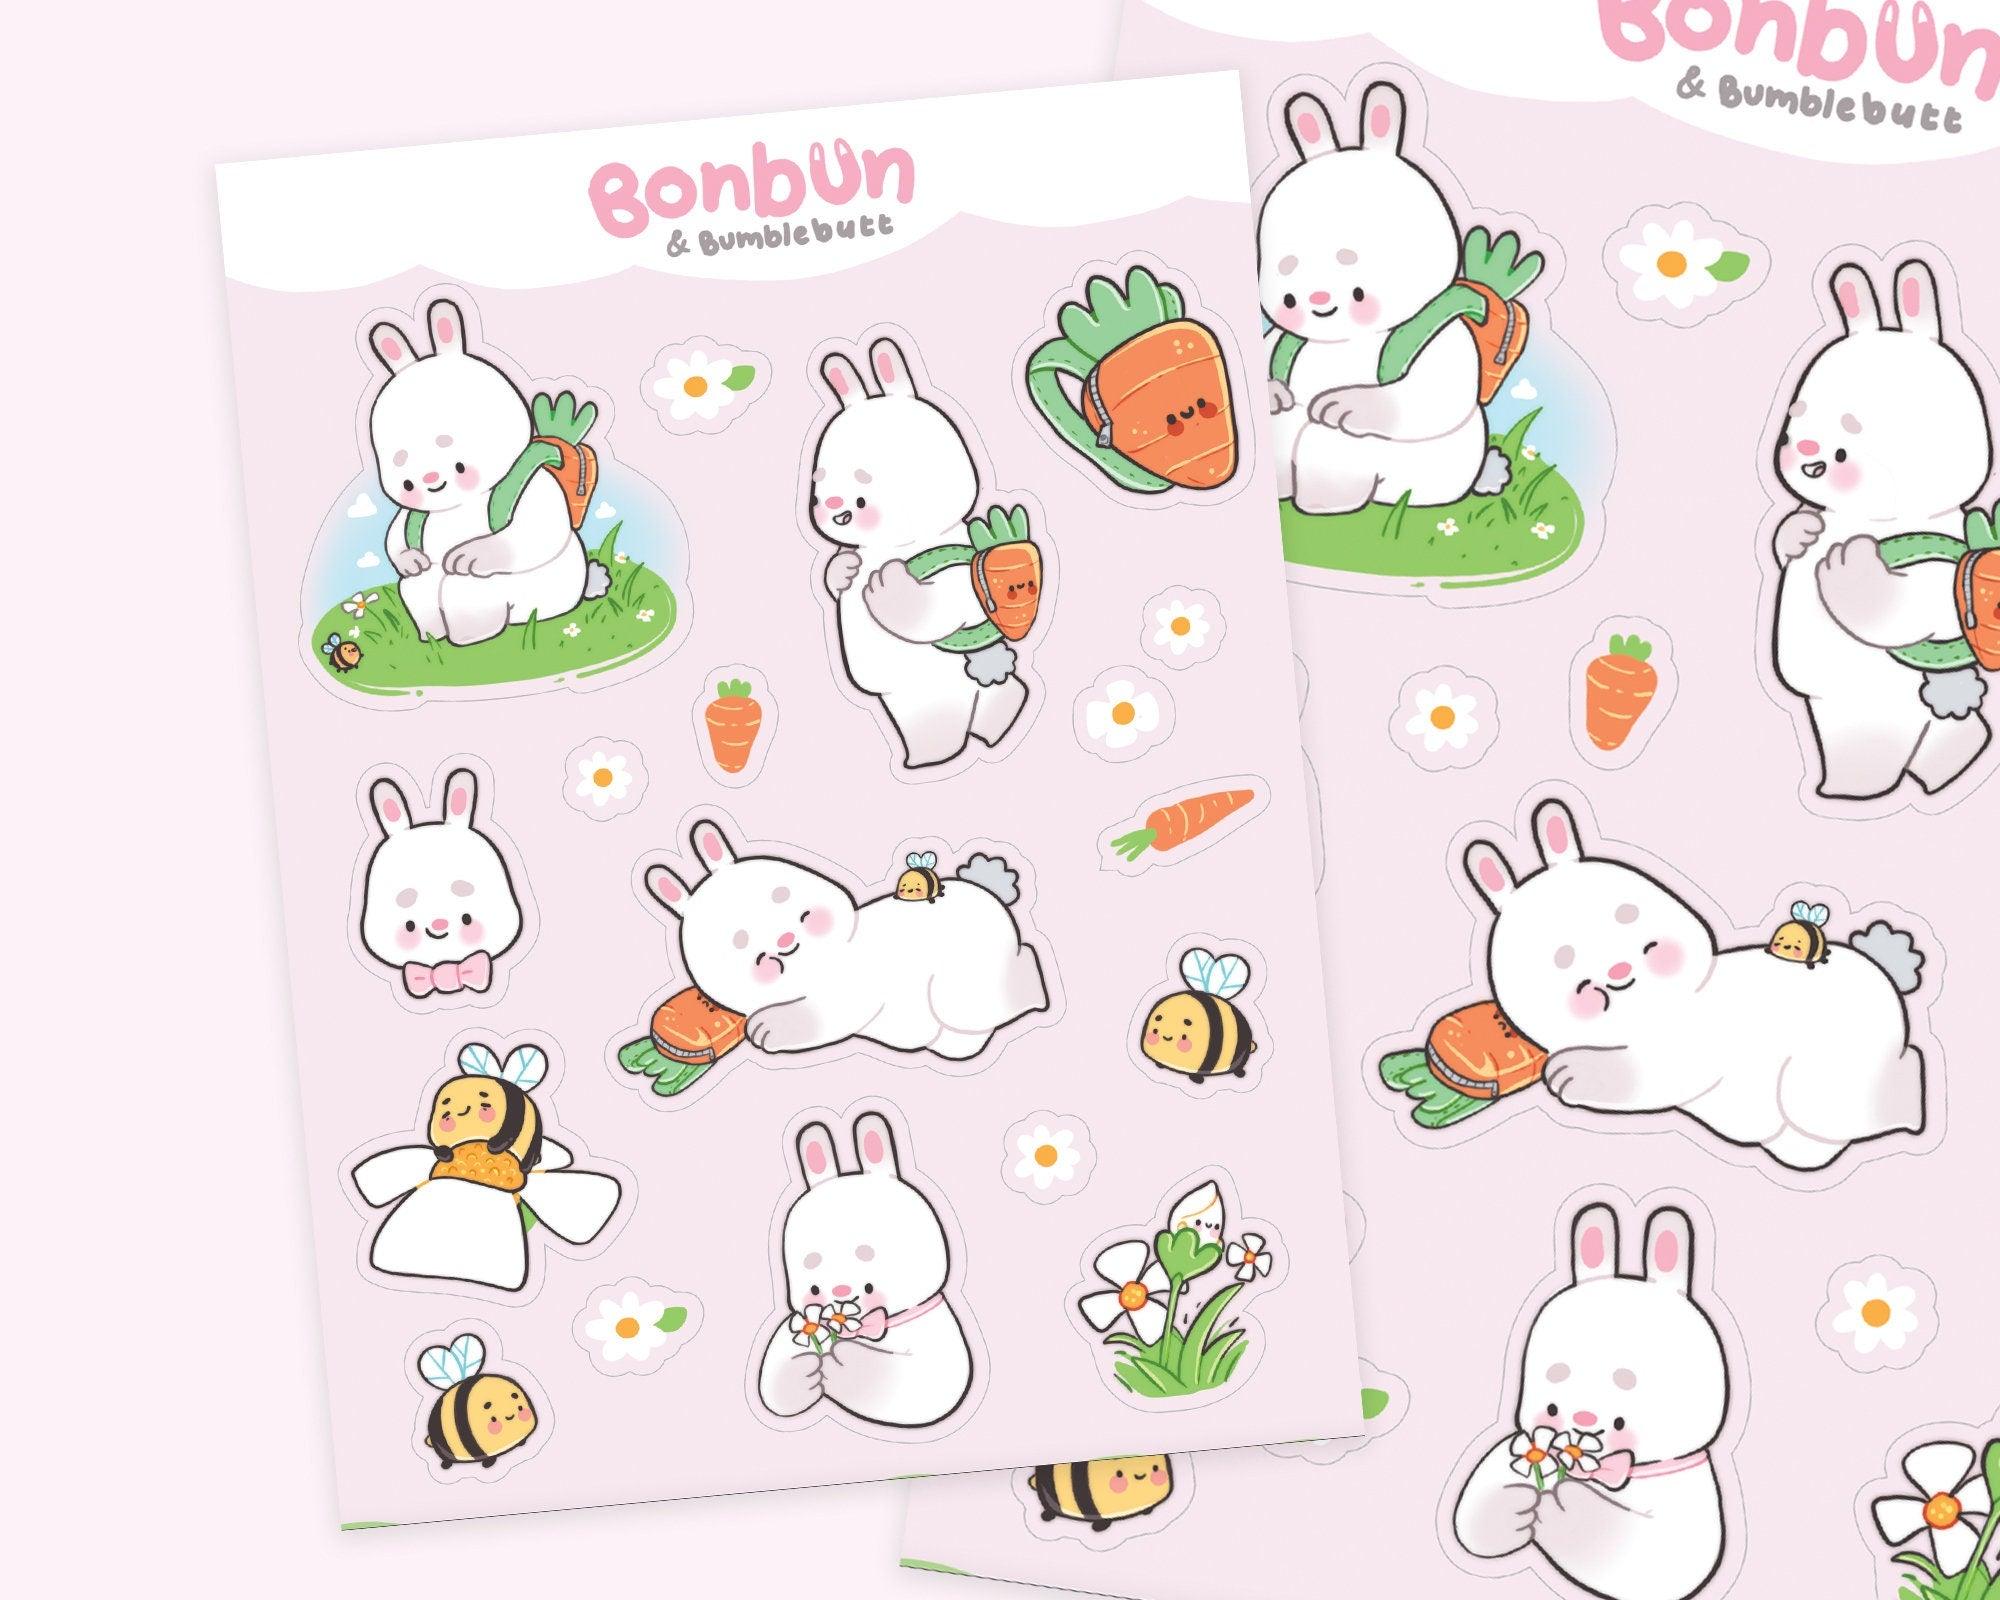 Bonbun & Bumblebutt Bunny Spring A5 Sticker Sheet - Waterproof Vinyl